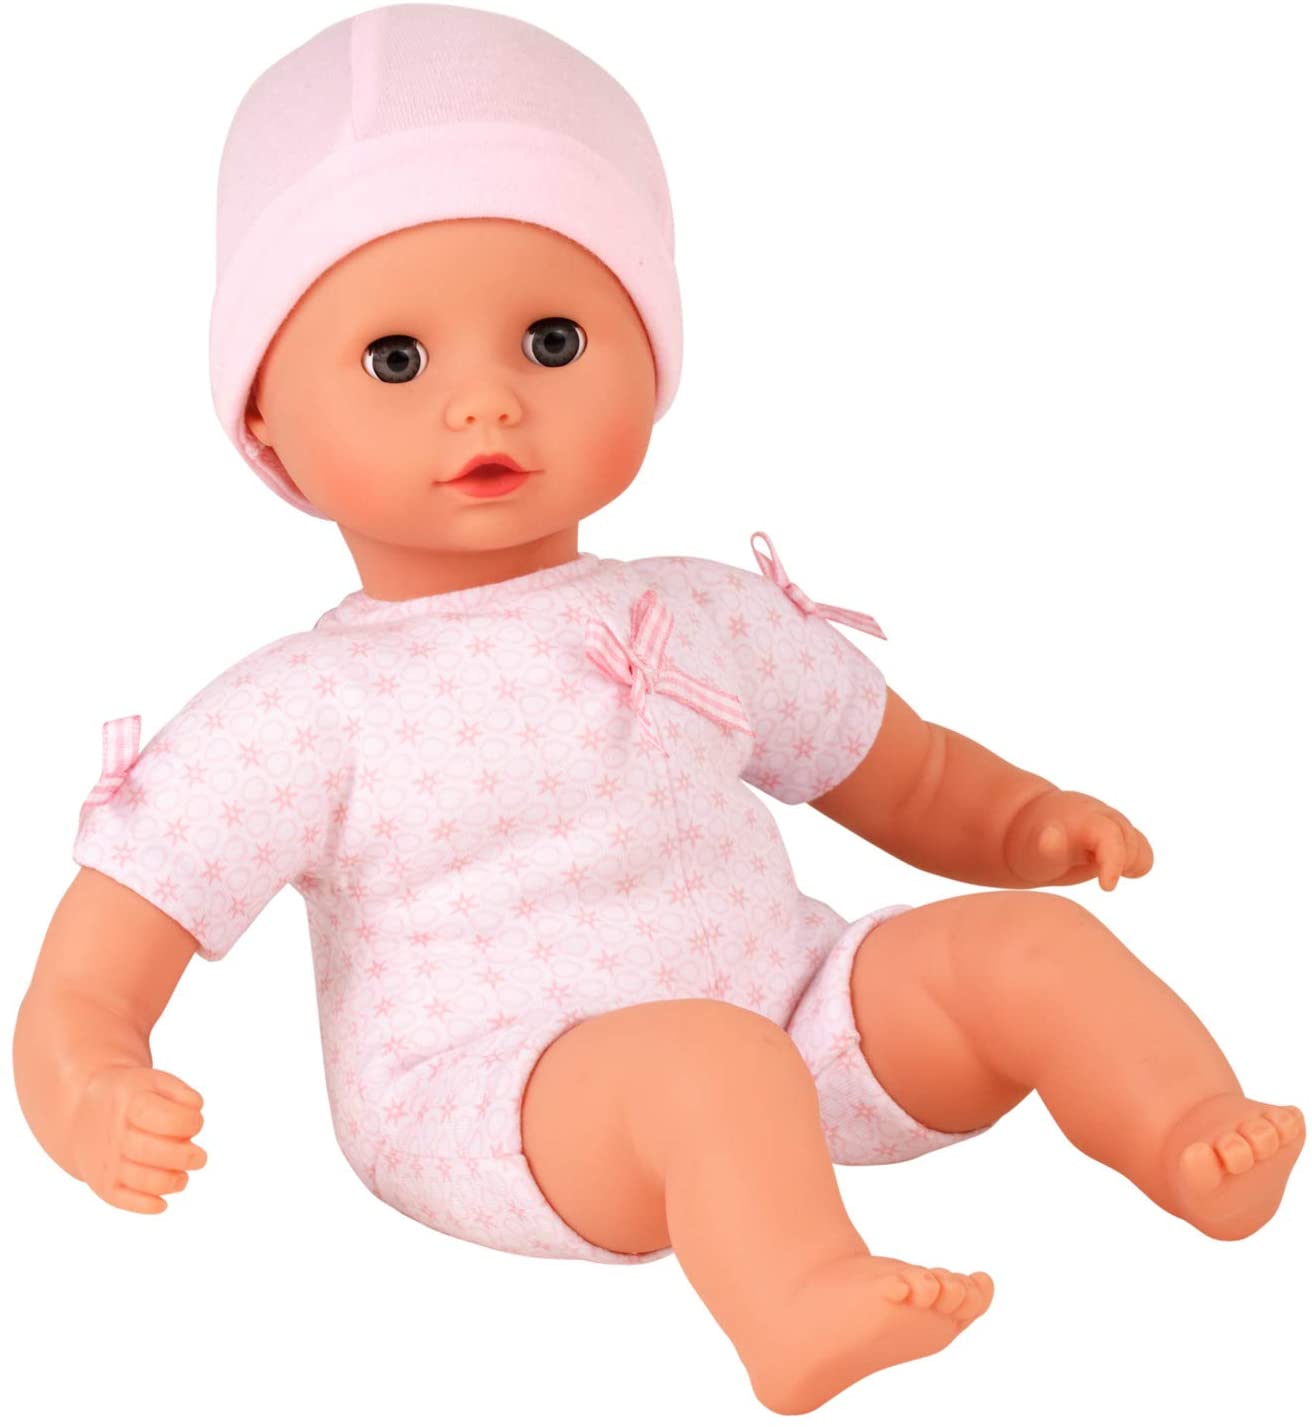 Götz 1320590 Bambola Muffin da vestire femmina - bambola bebè alta 33 cm con occhi azzurri che si chiudono, senza capelli, con berretto - Bambola con corpo morbido adatta dai 18 mesi in su